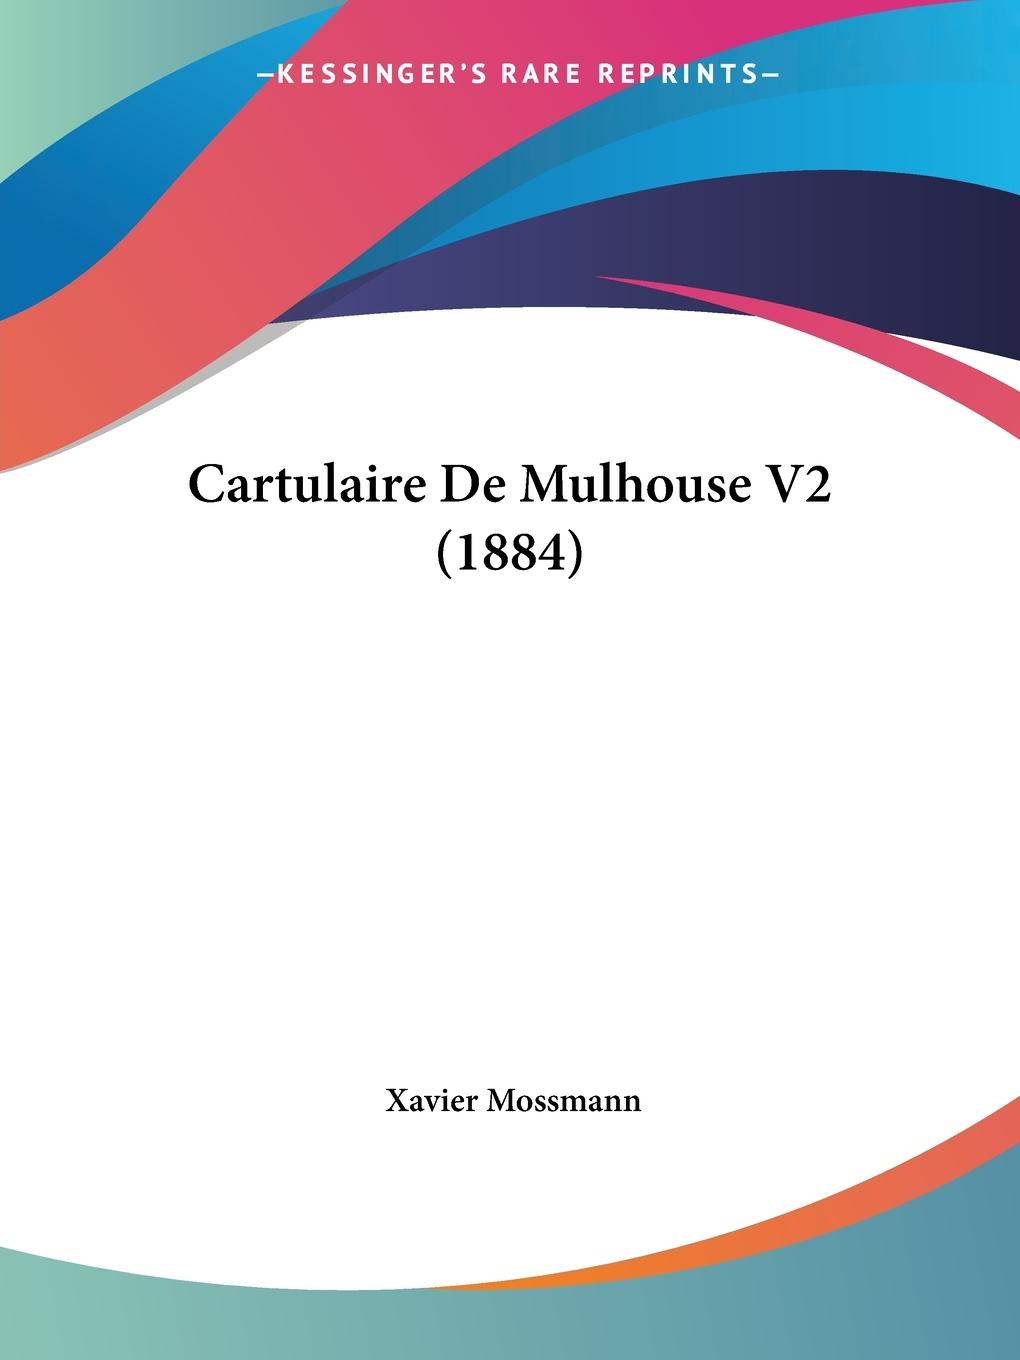 Cartulaire De Mulhouse V2 (1884) - Mossmann, Xavier